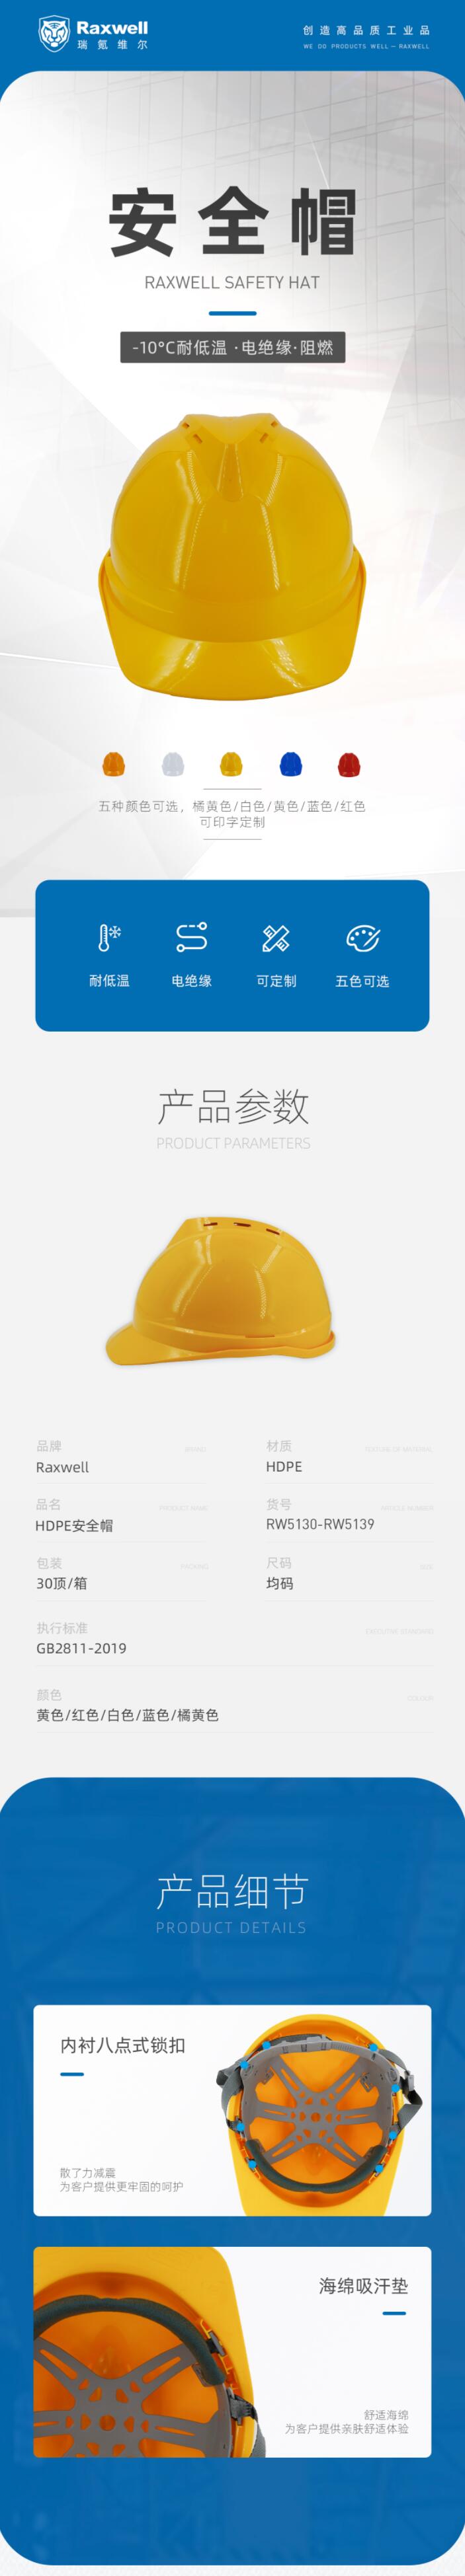 瑞氪维尔RW5137 HDPE无透气孔安全帽图片